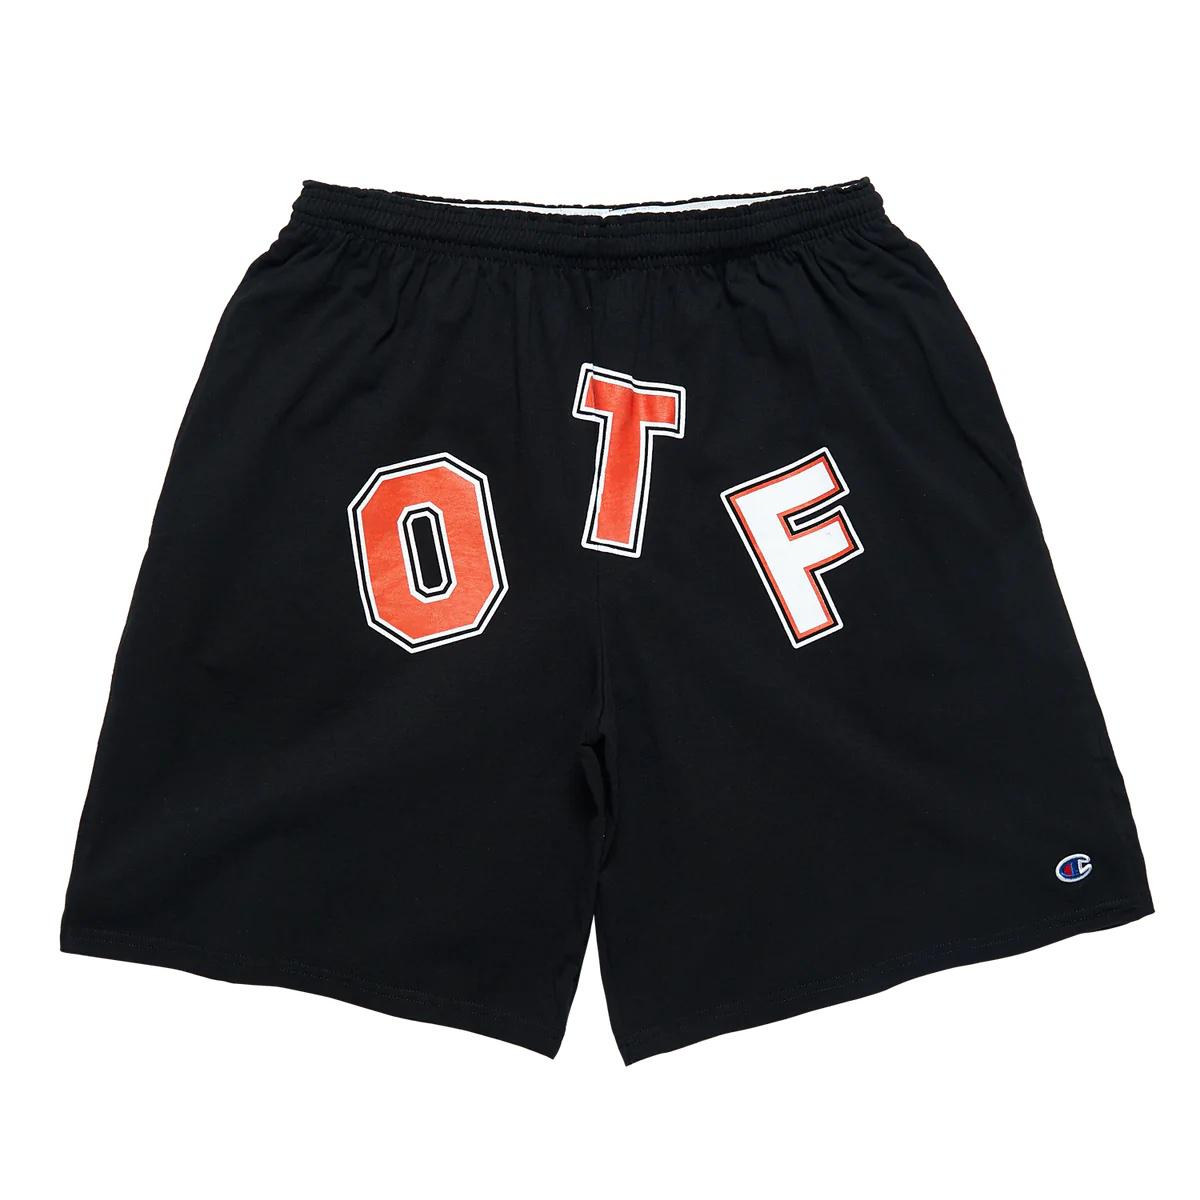 OTF BTS Shorts - Black - Used